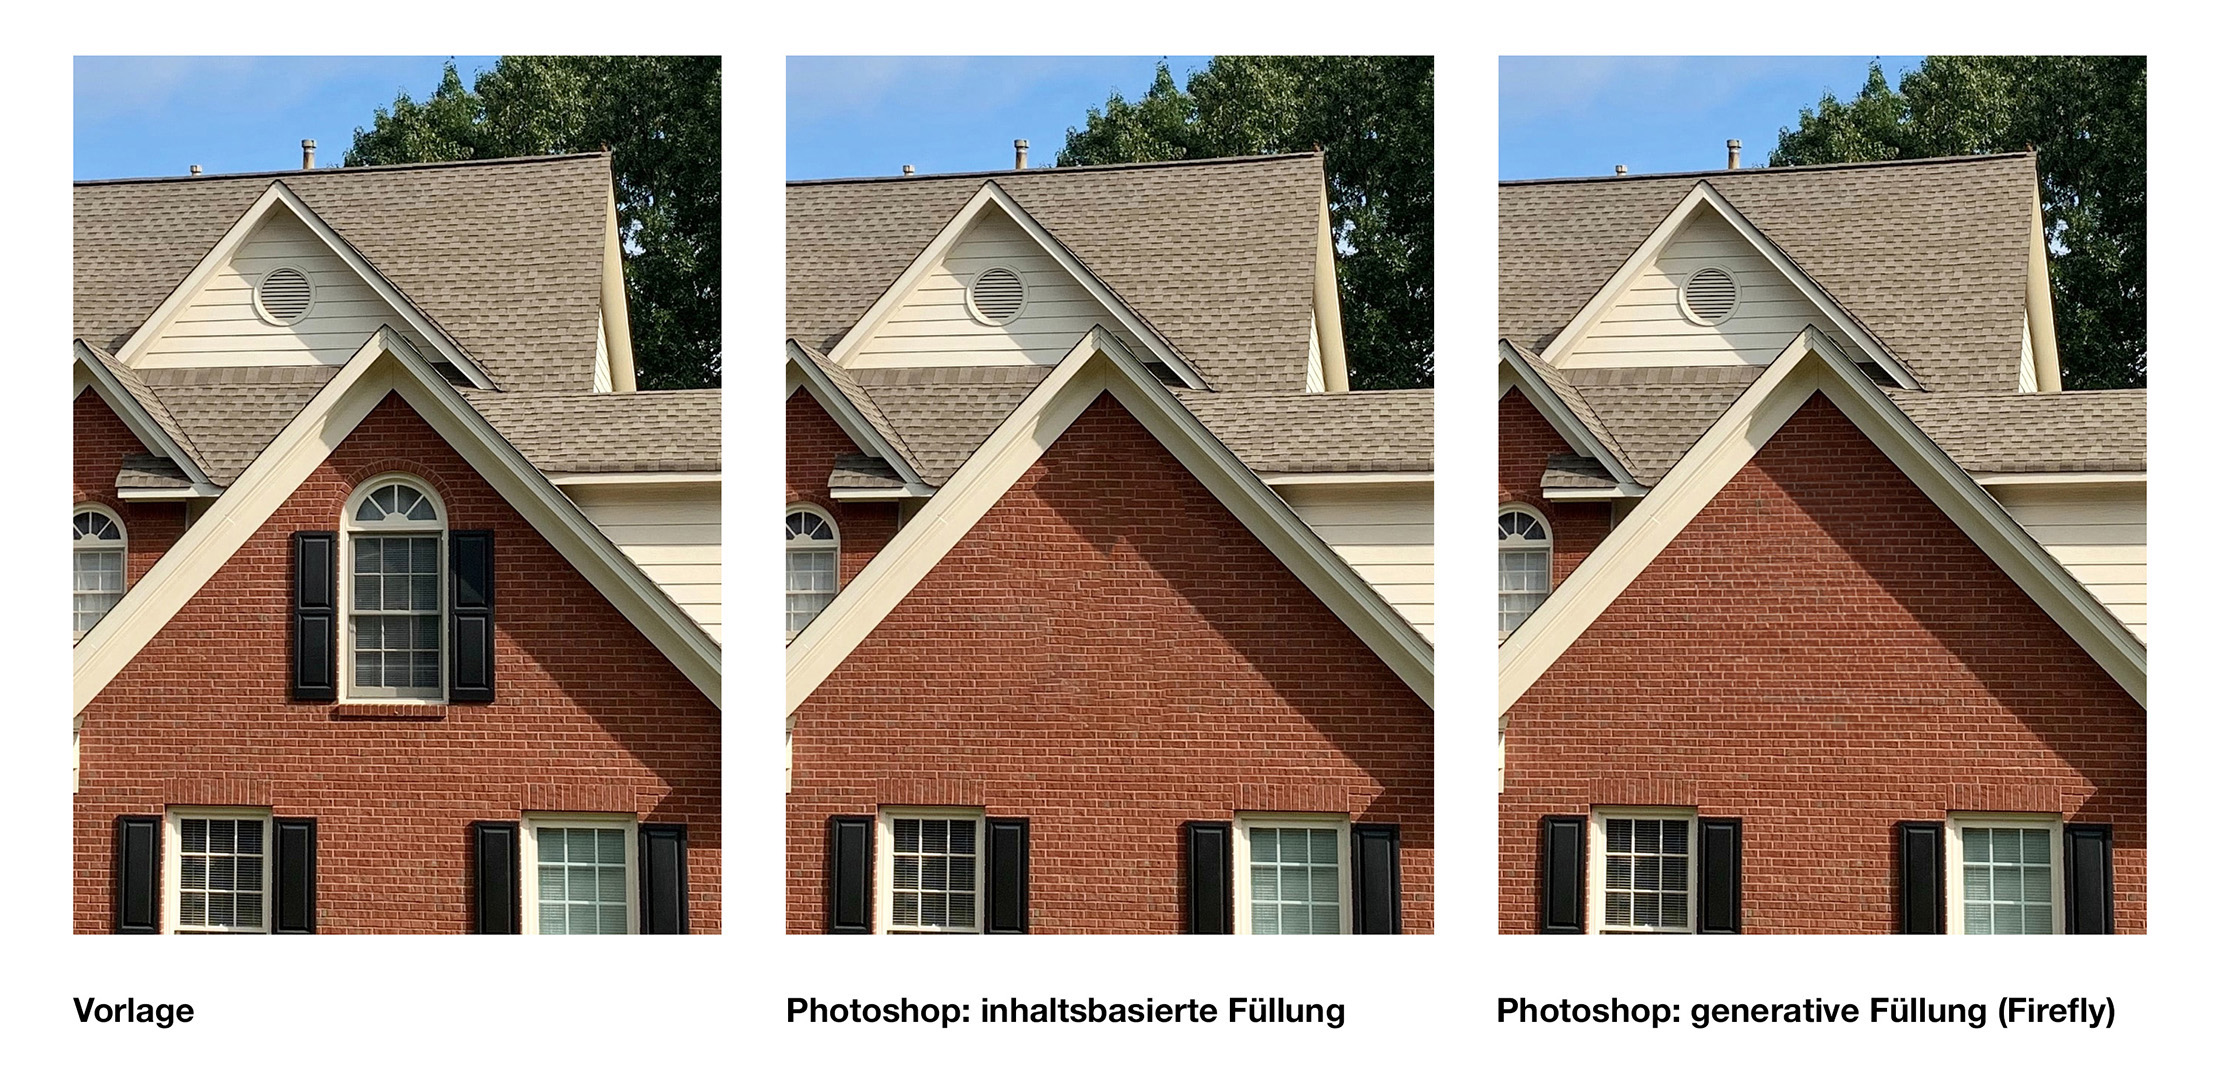 3 Bilder mit dem gleichen Motiv. Ausschnitt eines Hauses mit mehreren Fenstern sowie zwei Ansichten, in denen ein Fenster wegretuschiert wurde, einmal mit der inhaltsbasierten Füllung und einmal mit Photoshop Firefly. 